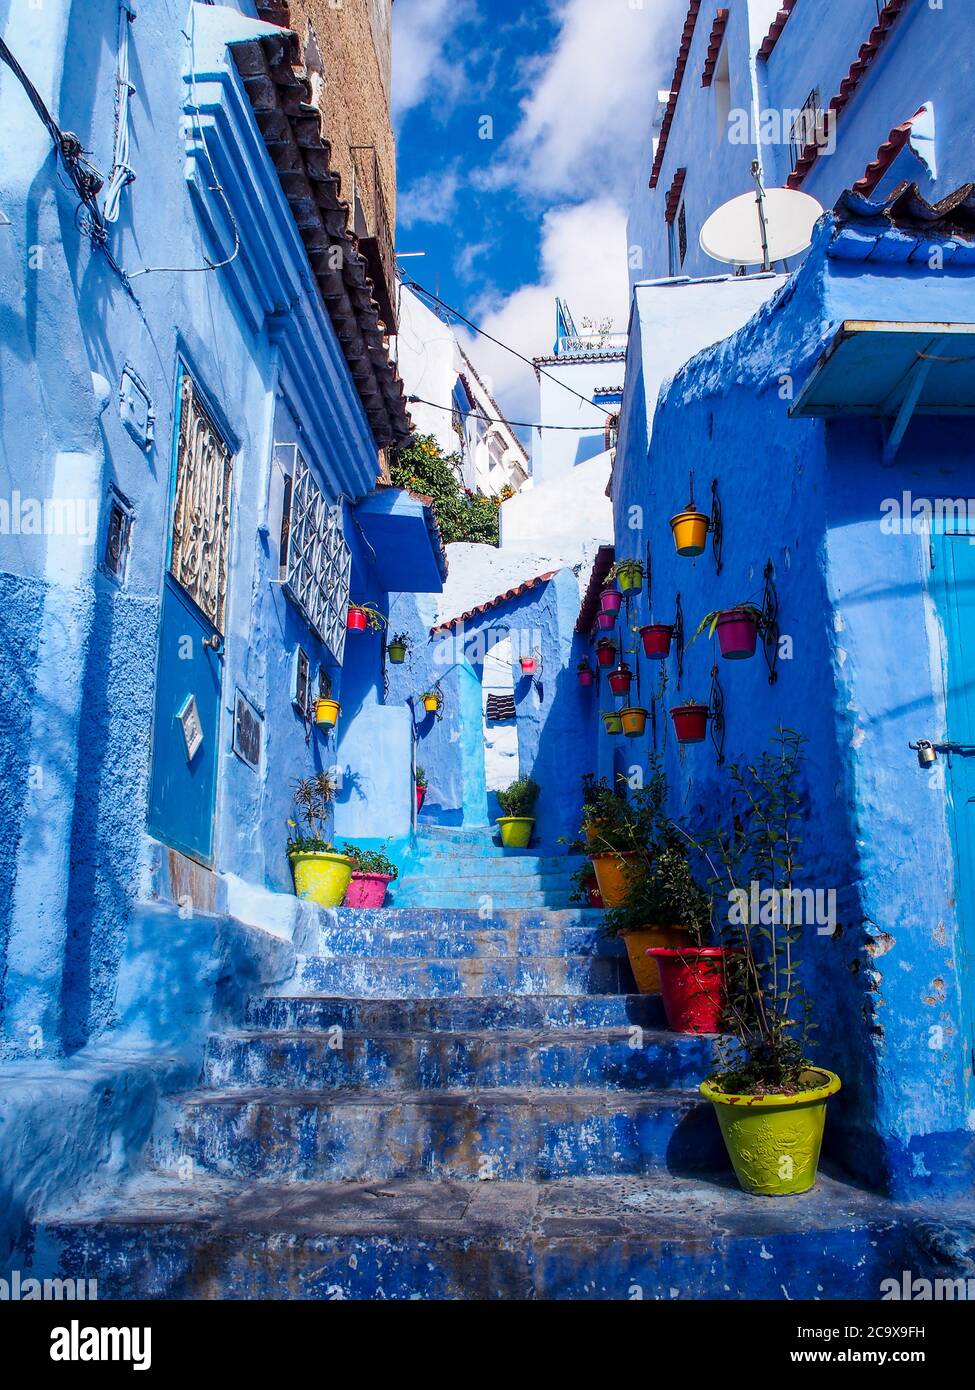 Village bleu de cobalt à Chefchaouen, Maroc, Afrique du Nord. Porte bleue, mur et sol et pots de fleurs colorés. Pouplar place pour les touristes. Banque D'Images